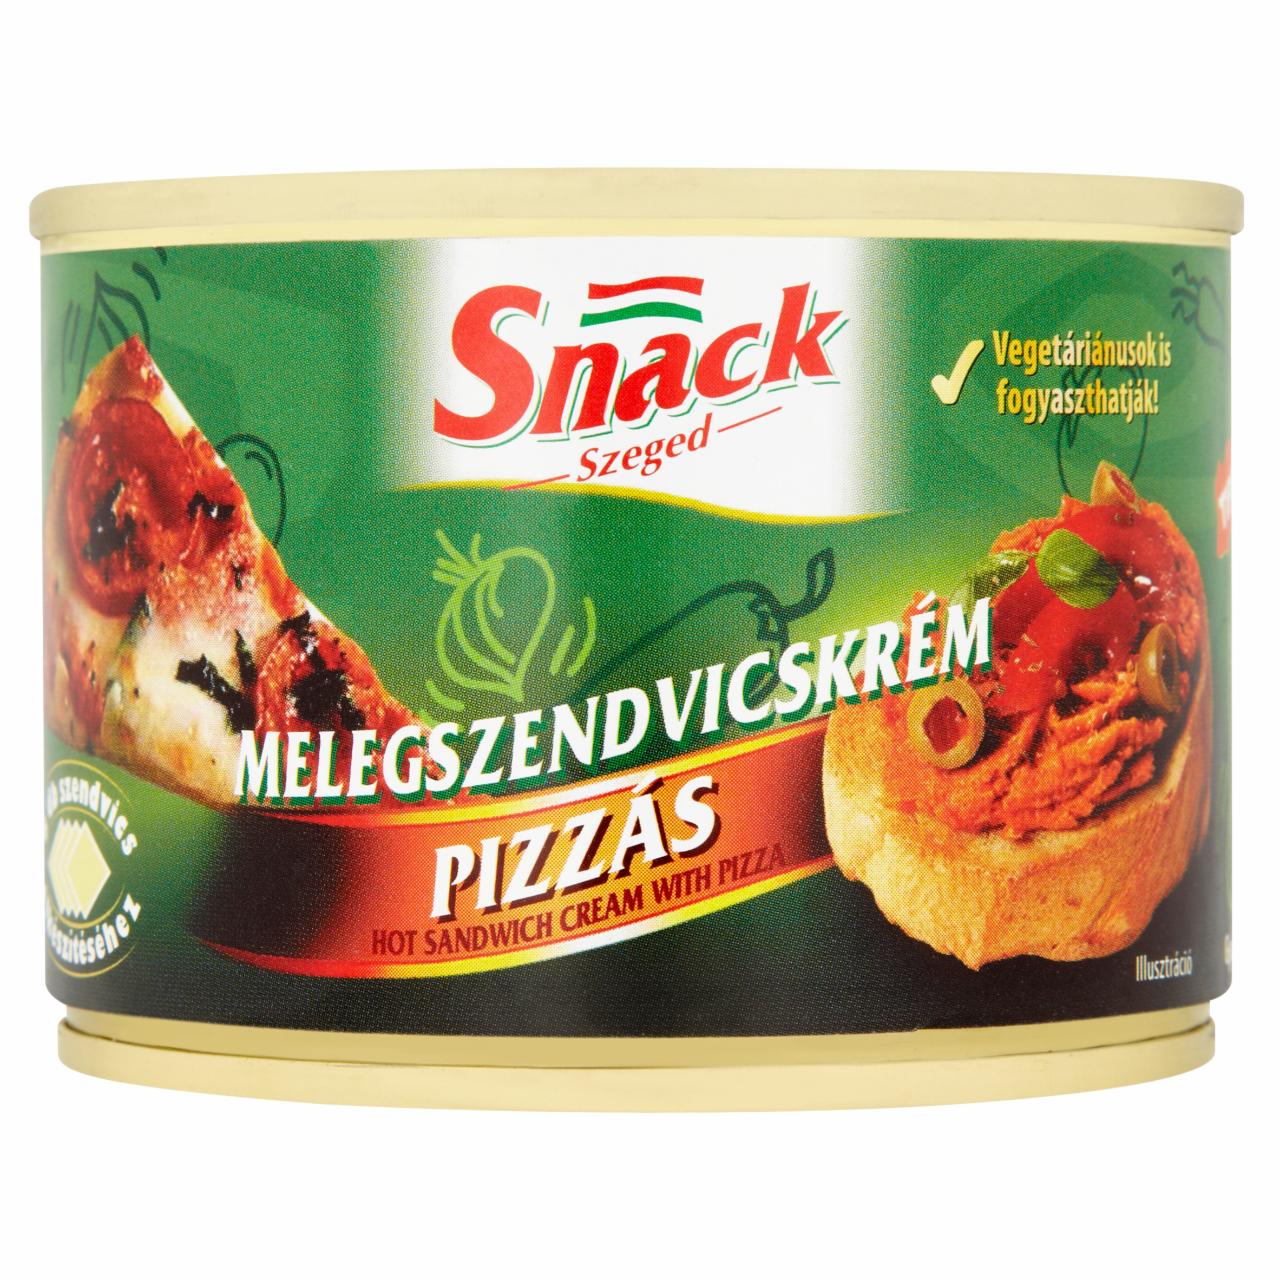 Képek - Snack Szeged pizzás melegszendvicskrém 190 g